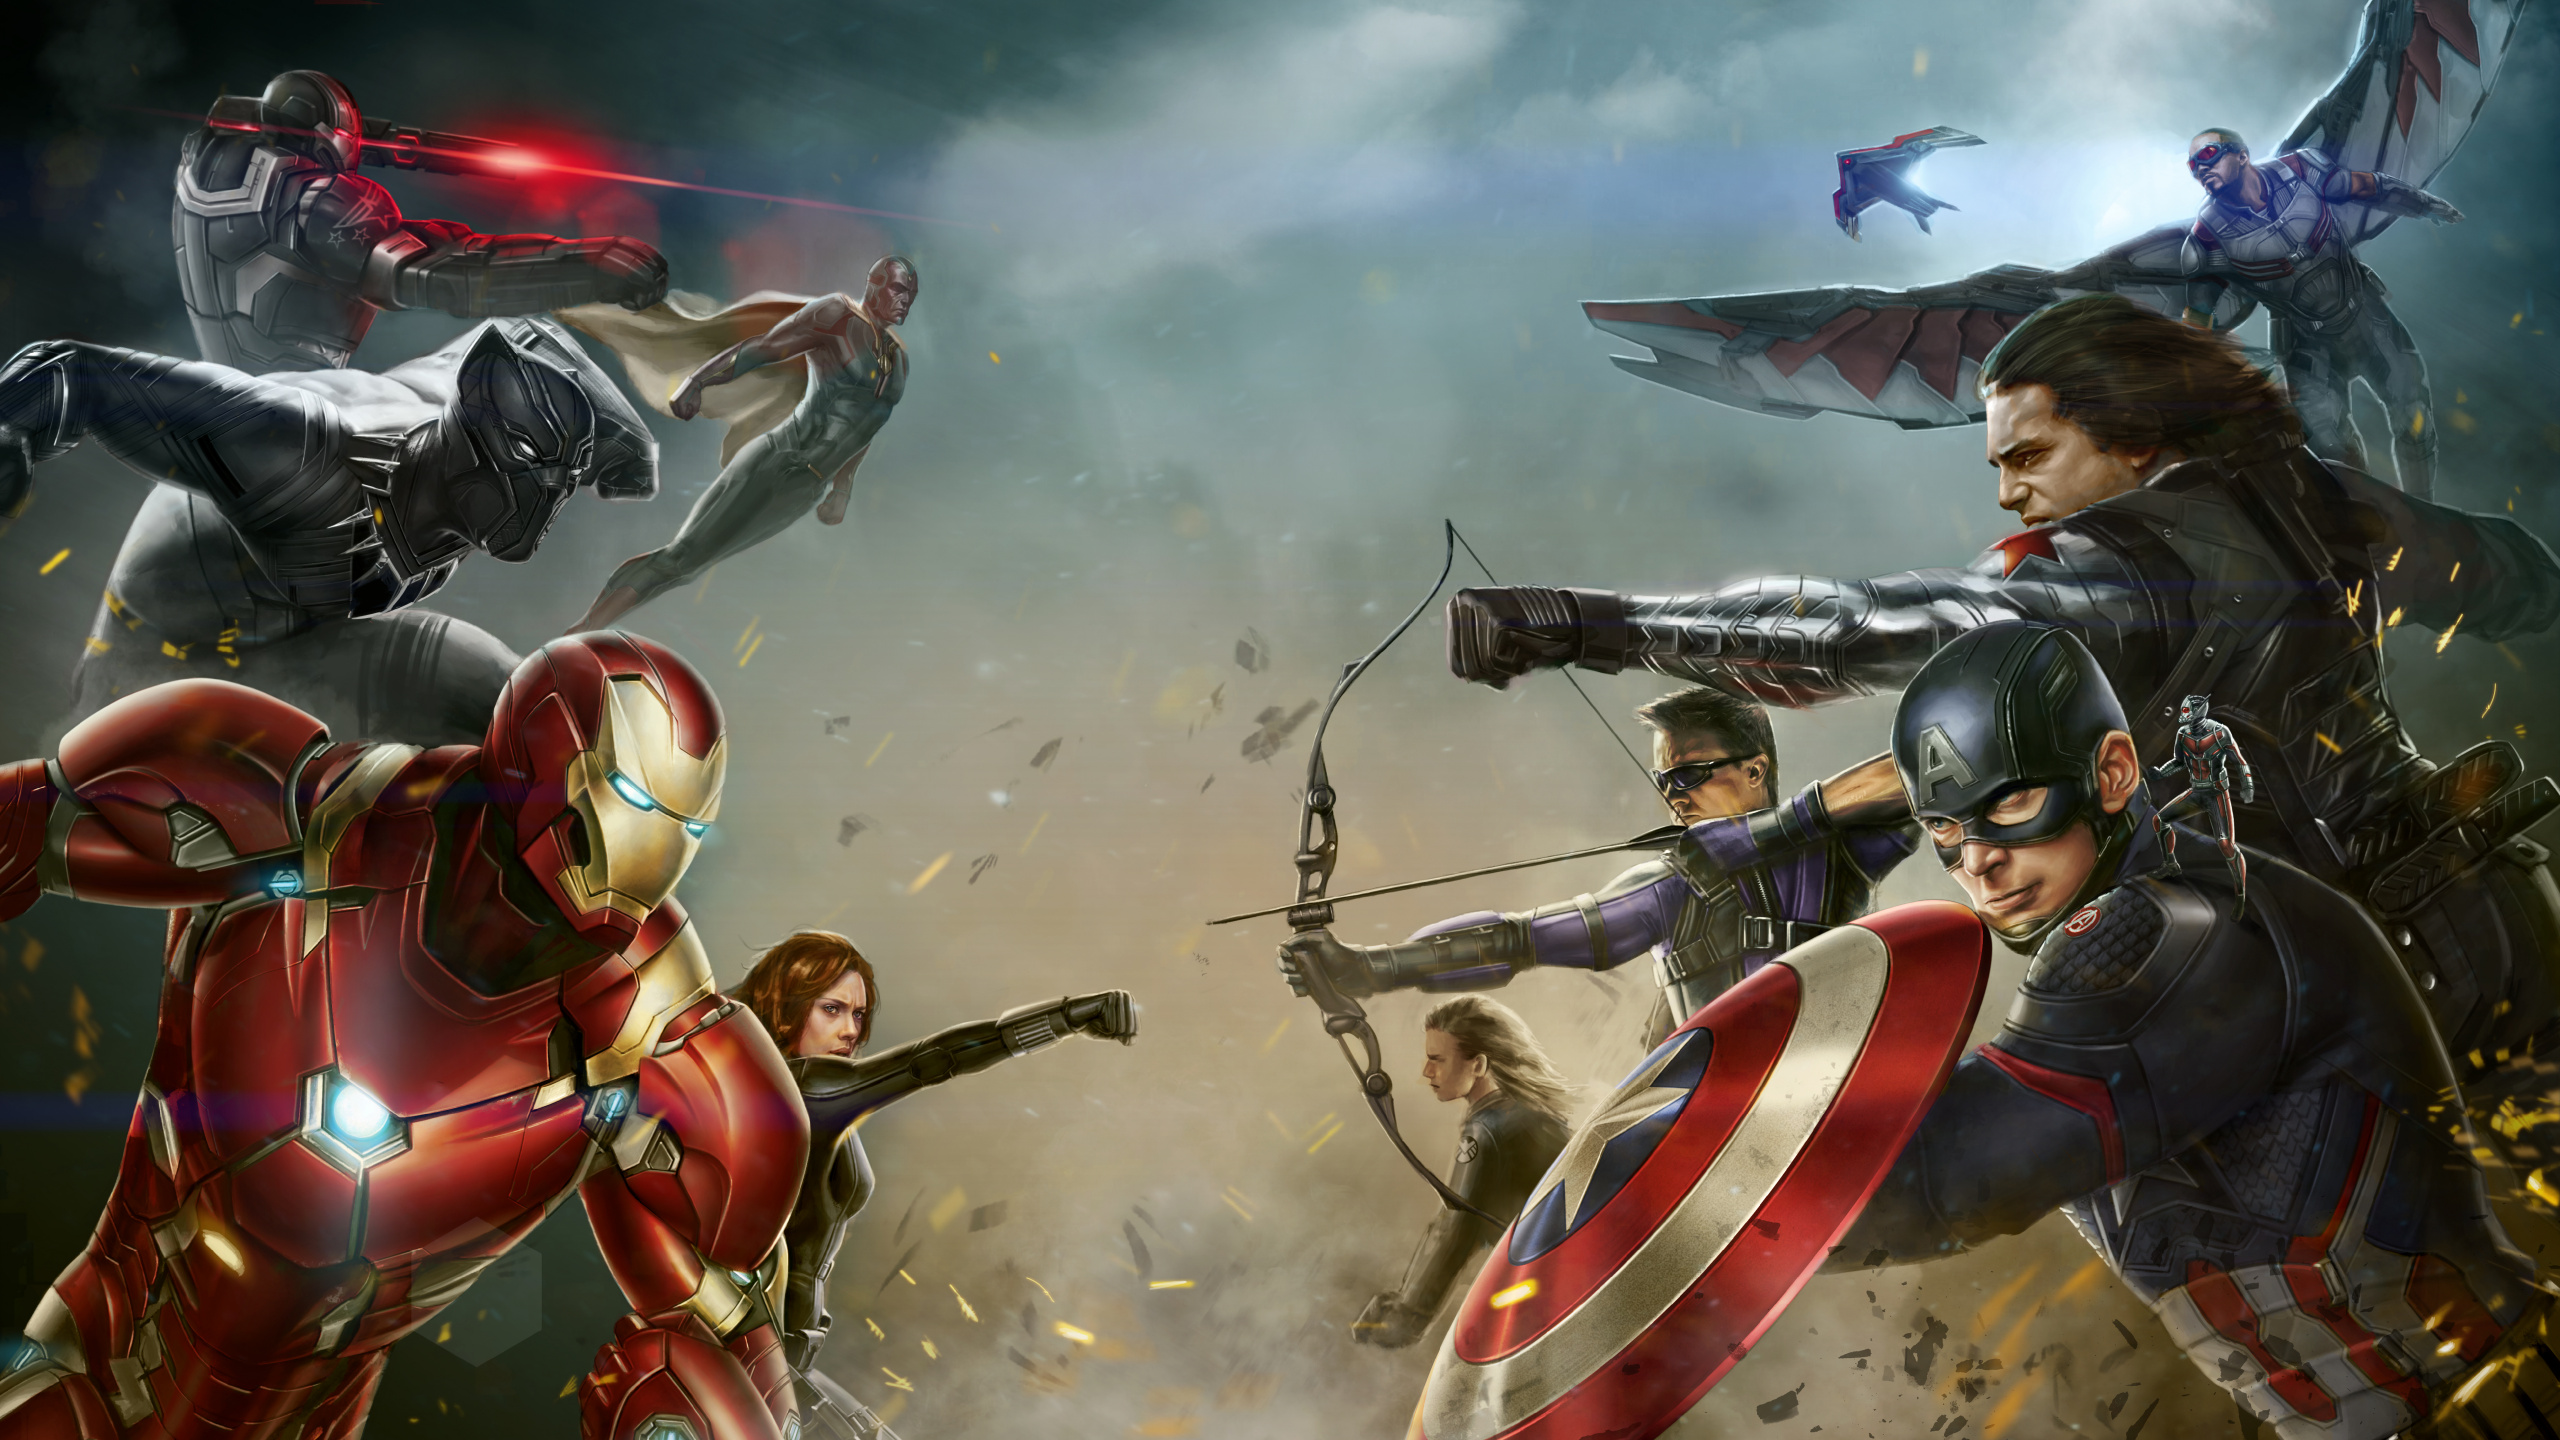 美国队长的内战, 美国队长, Marvel, 电脑游戏, 超级英雄 壁纸 2560x1440 允许